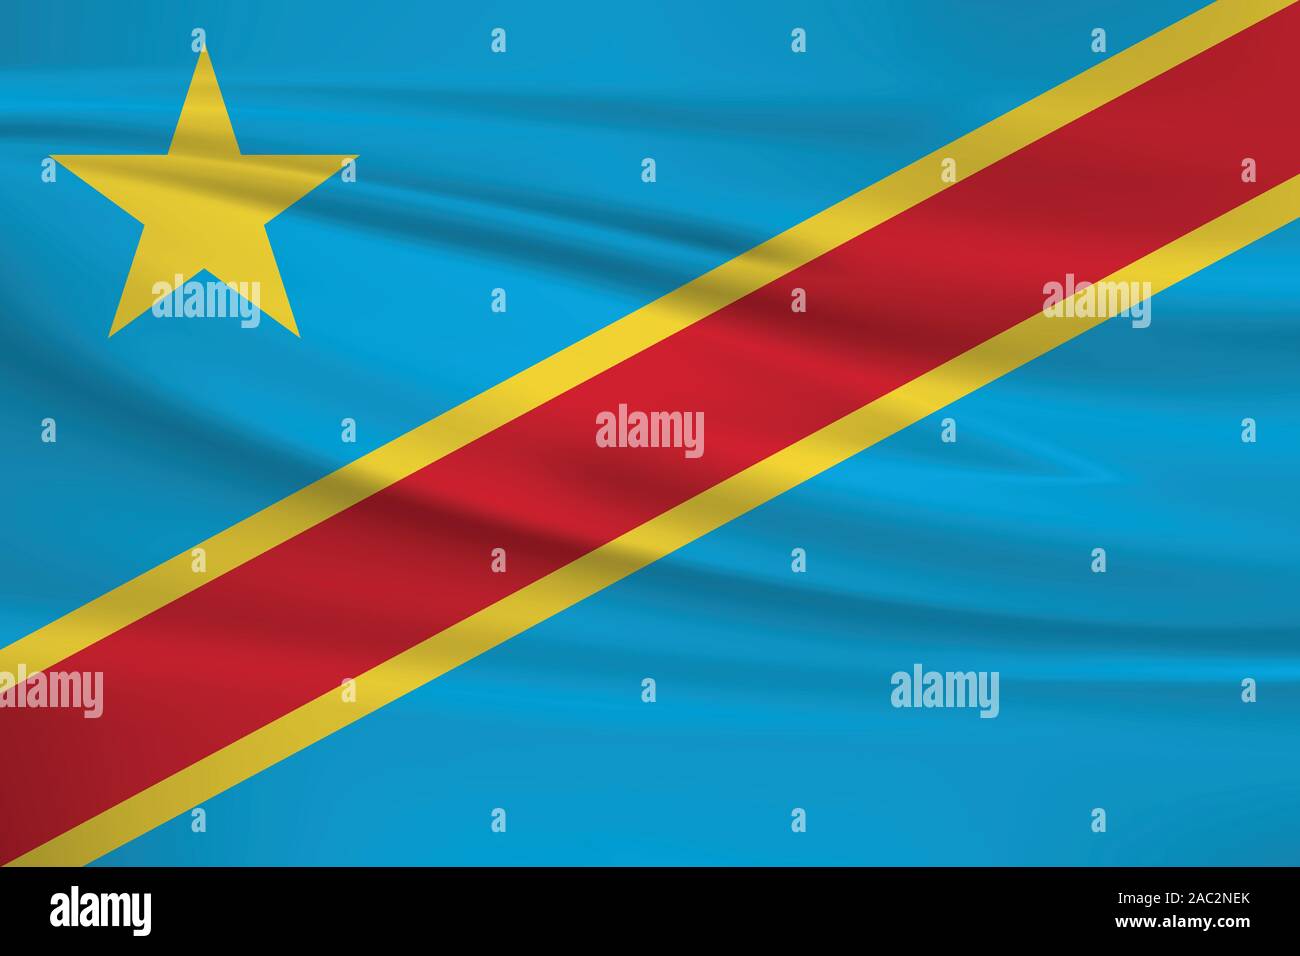 Forme Congo drapeau, couleurs officielles et le ratio exact. Congo drapeau national. Vector illustration. Illustration de Vecteur